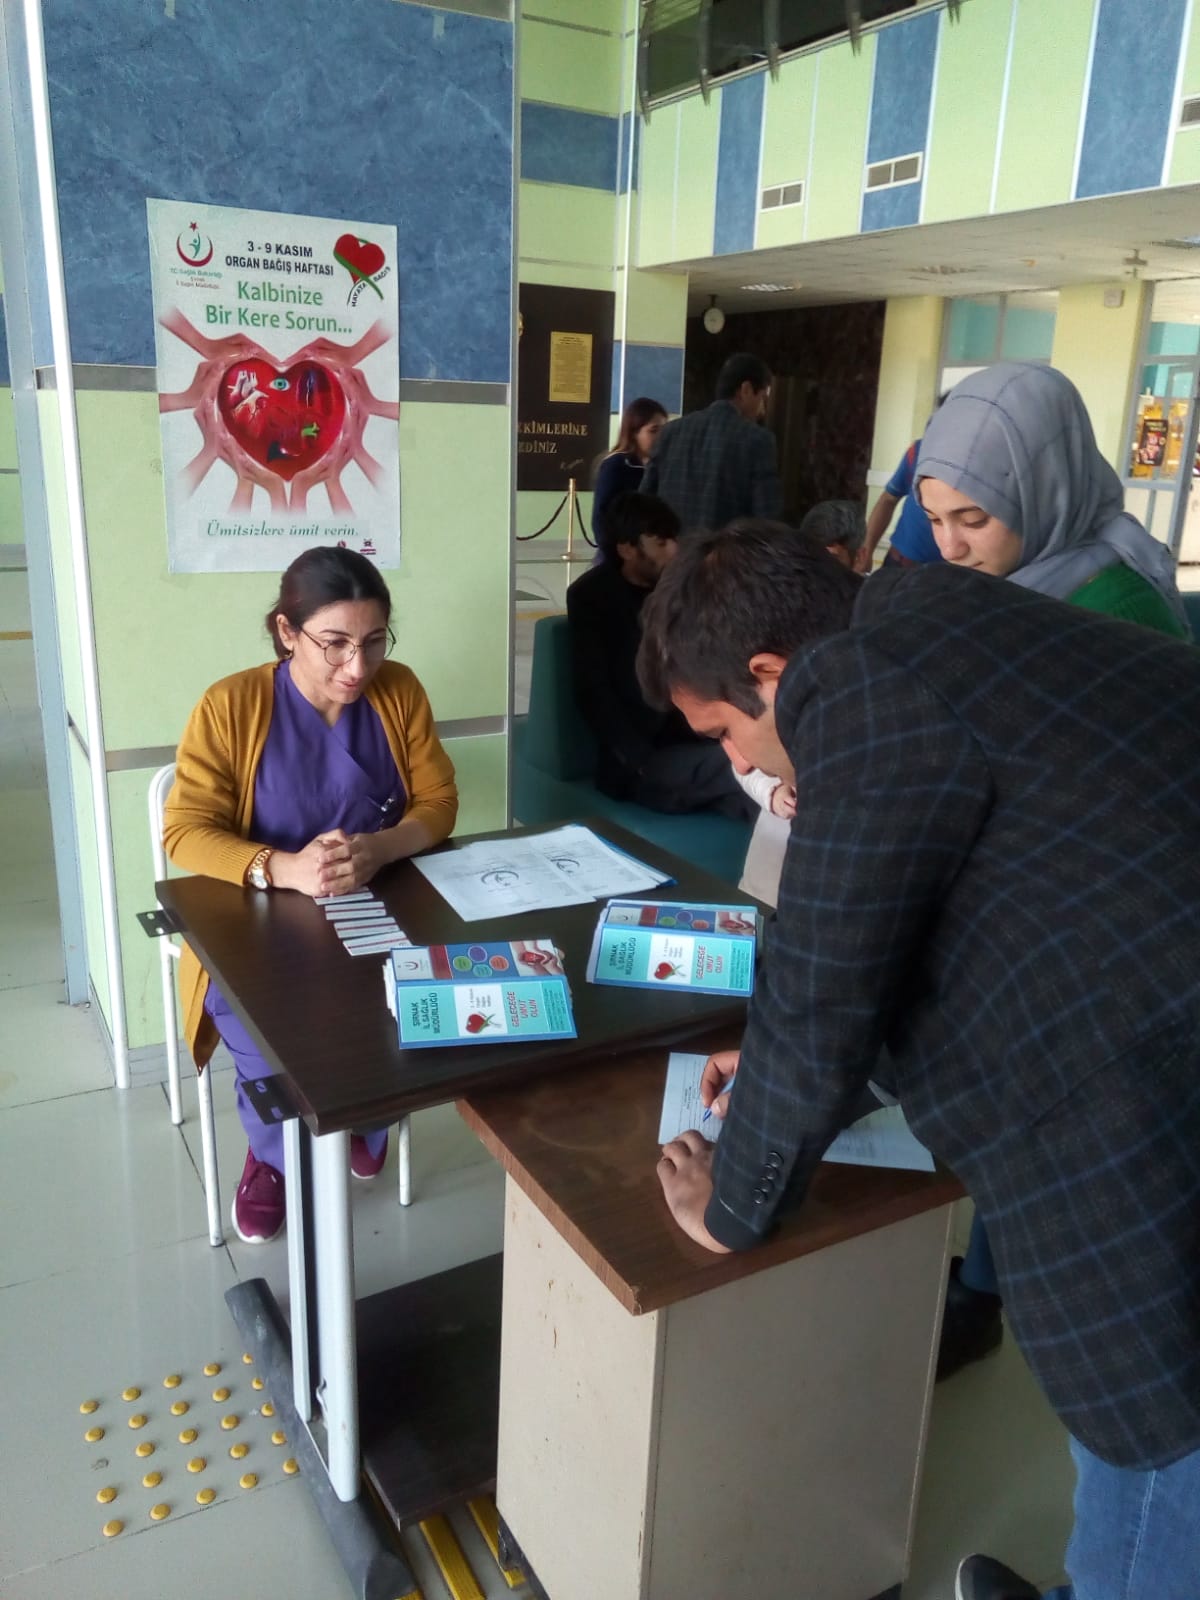 3-9 Kasım Organ Bağış Haftası nedeniyle hastanemiz giriş holünde kurulan standa vatandaşlar ilgi gösterdi. Vatandaşlara organ bağışıyla ilgili bilgilendirici broşürler dağıtıldı. 